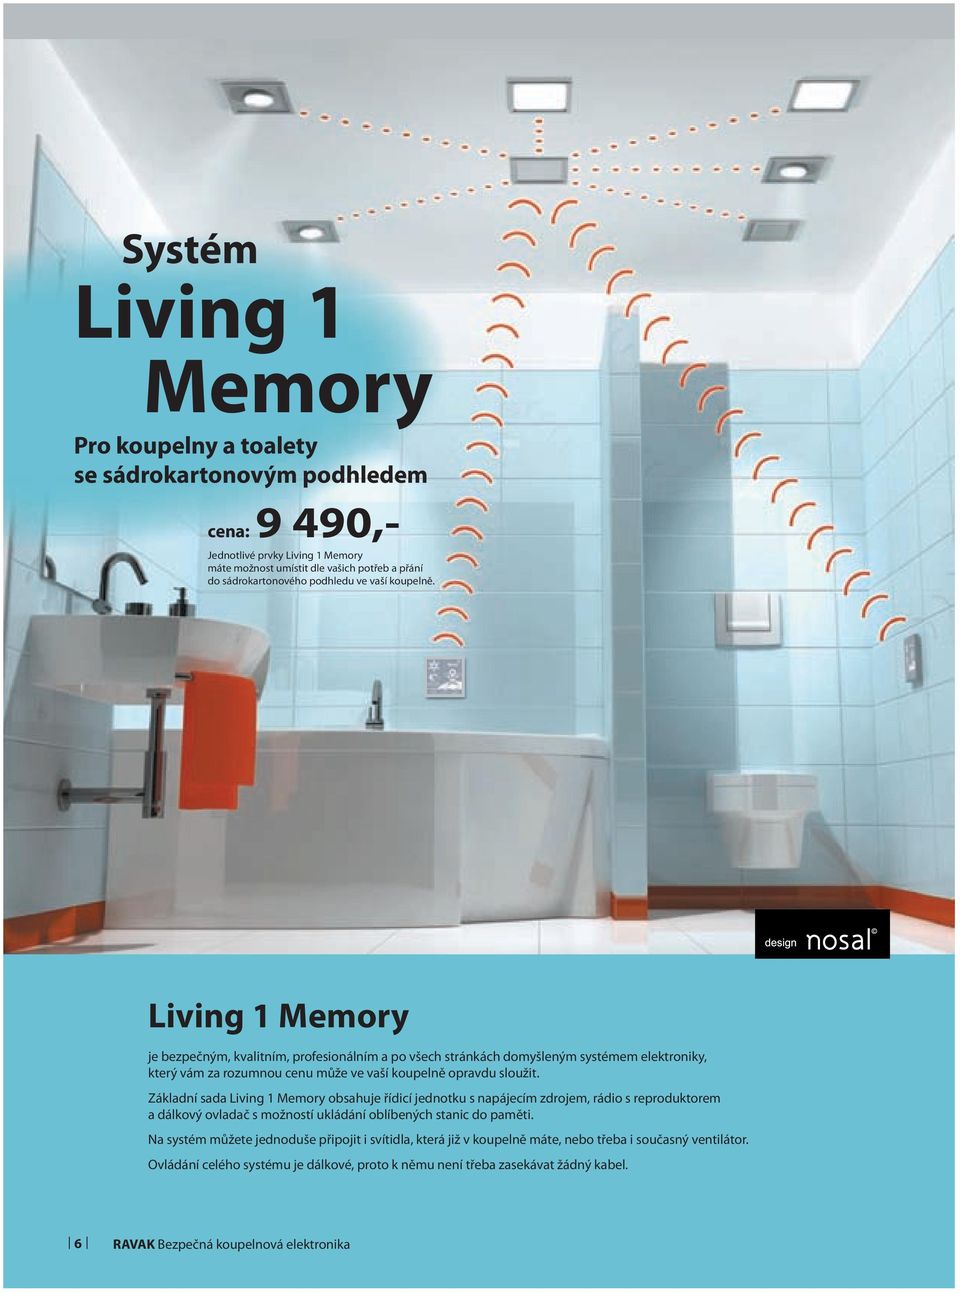 Living 1 Memory je bezpečným, kvalitním, profesionálním a po všech stránkách domyšleným systémem elektroniky, který vám za rozumnou cenu může ve vaší koupelně opravdu sloužit.